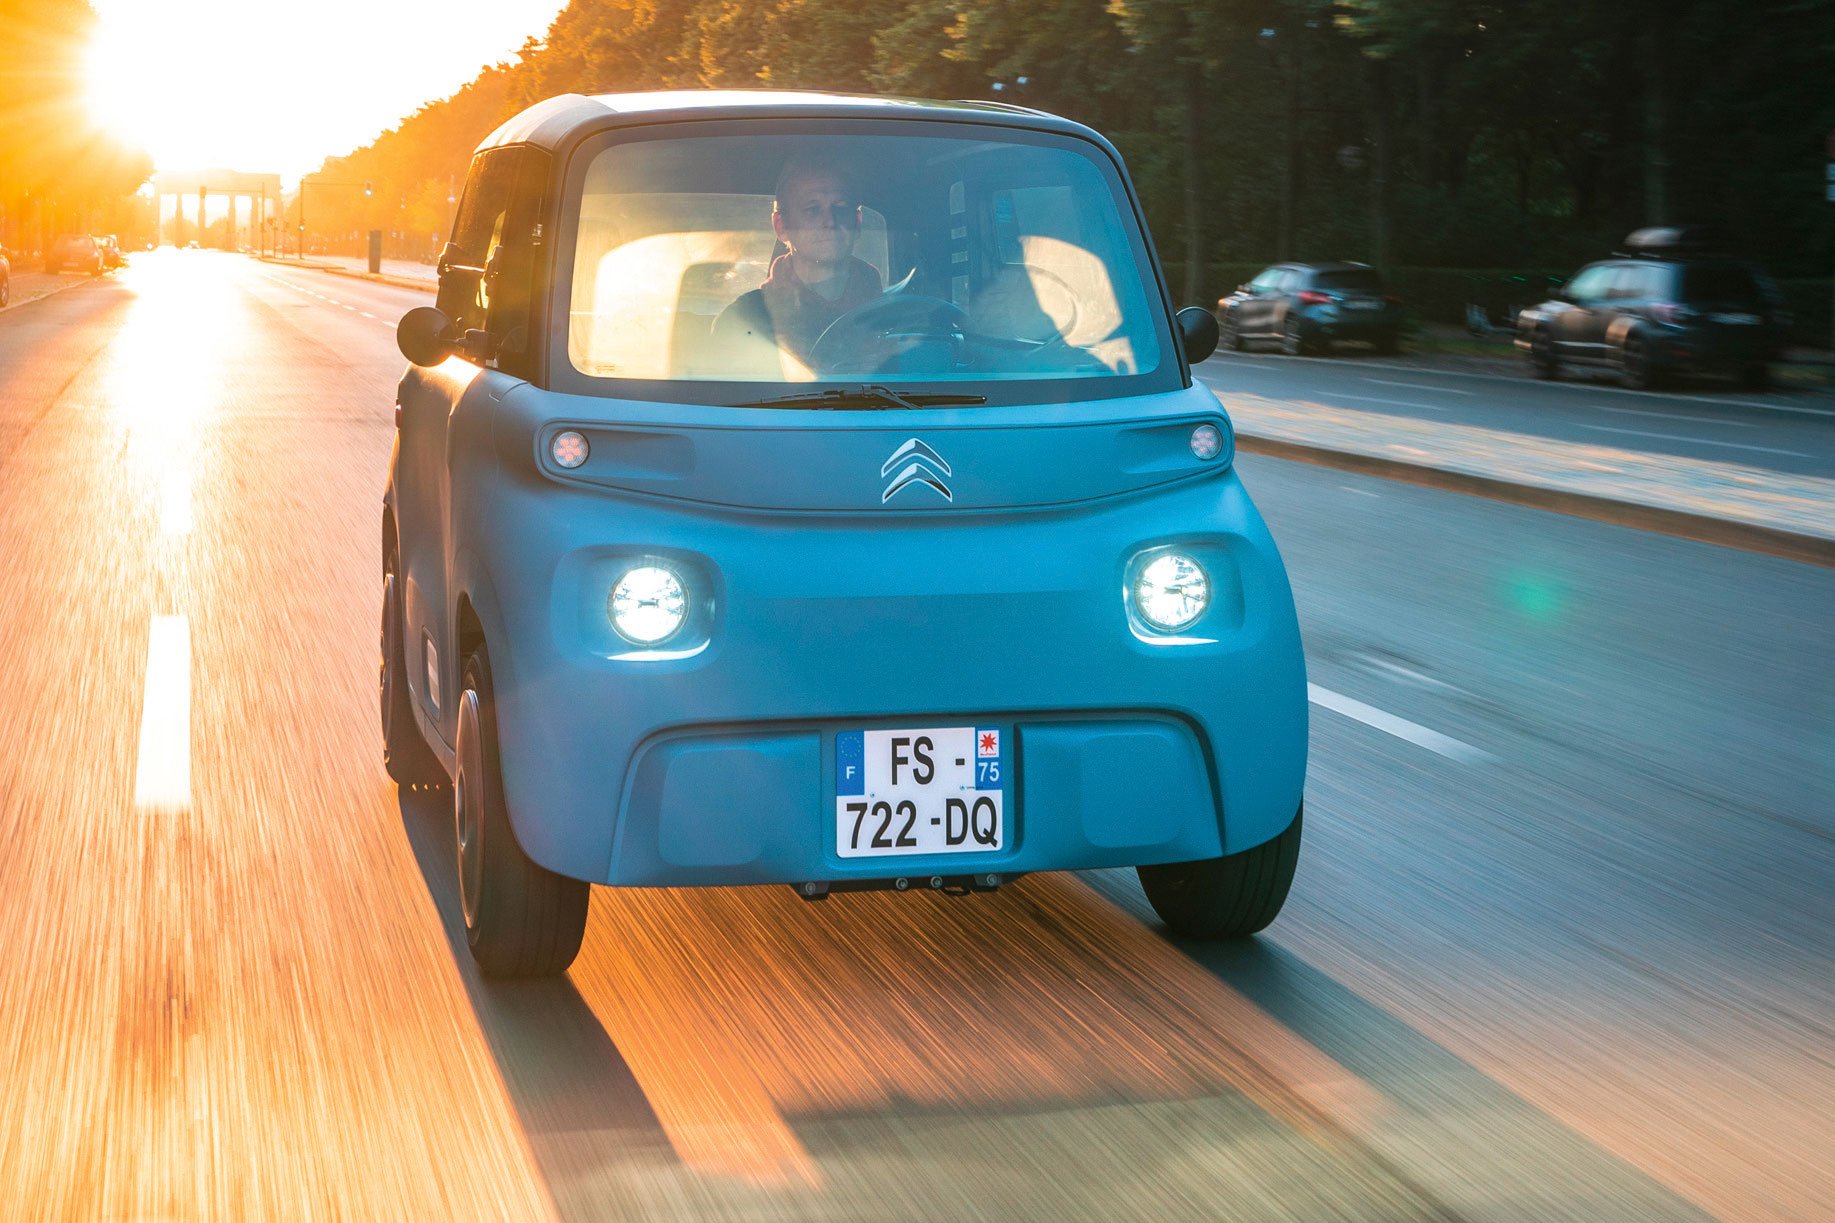 Citroën Ami – Mopedauto, 21 Jhdt.: Charakter: Citroën besinnt sich seiner Wurzeln: Der Ami ist witzig, minimalistisch und schlau. Ein pures, bloß 2,4 m langes Stadtvehikel, das maximal 45 km/h schnell ist. Deshalb sind auch 75 km Reichweite genug.
Elektrik: 6 kW Leistung, Topspeed 45 km/h, ca. 70 km Reichweite. Ab ca. € 7000,–. Ab Frühjahr 2021. Das Besondere: Darf mit einem Mopedführerschein ab 15 Jahren gefahren werden.